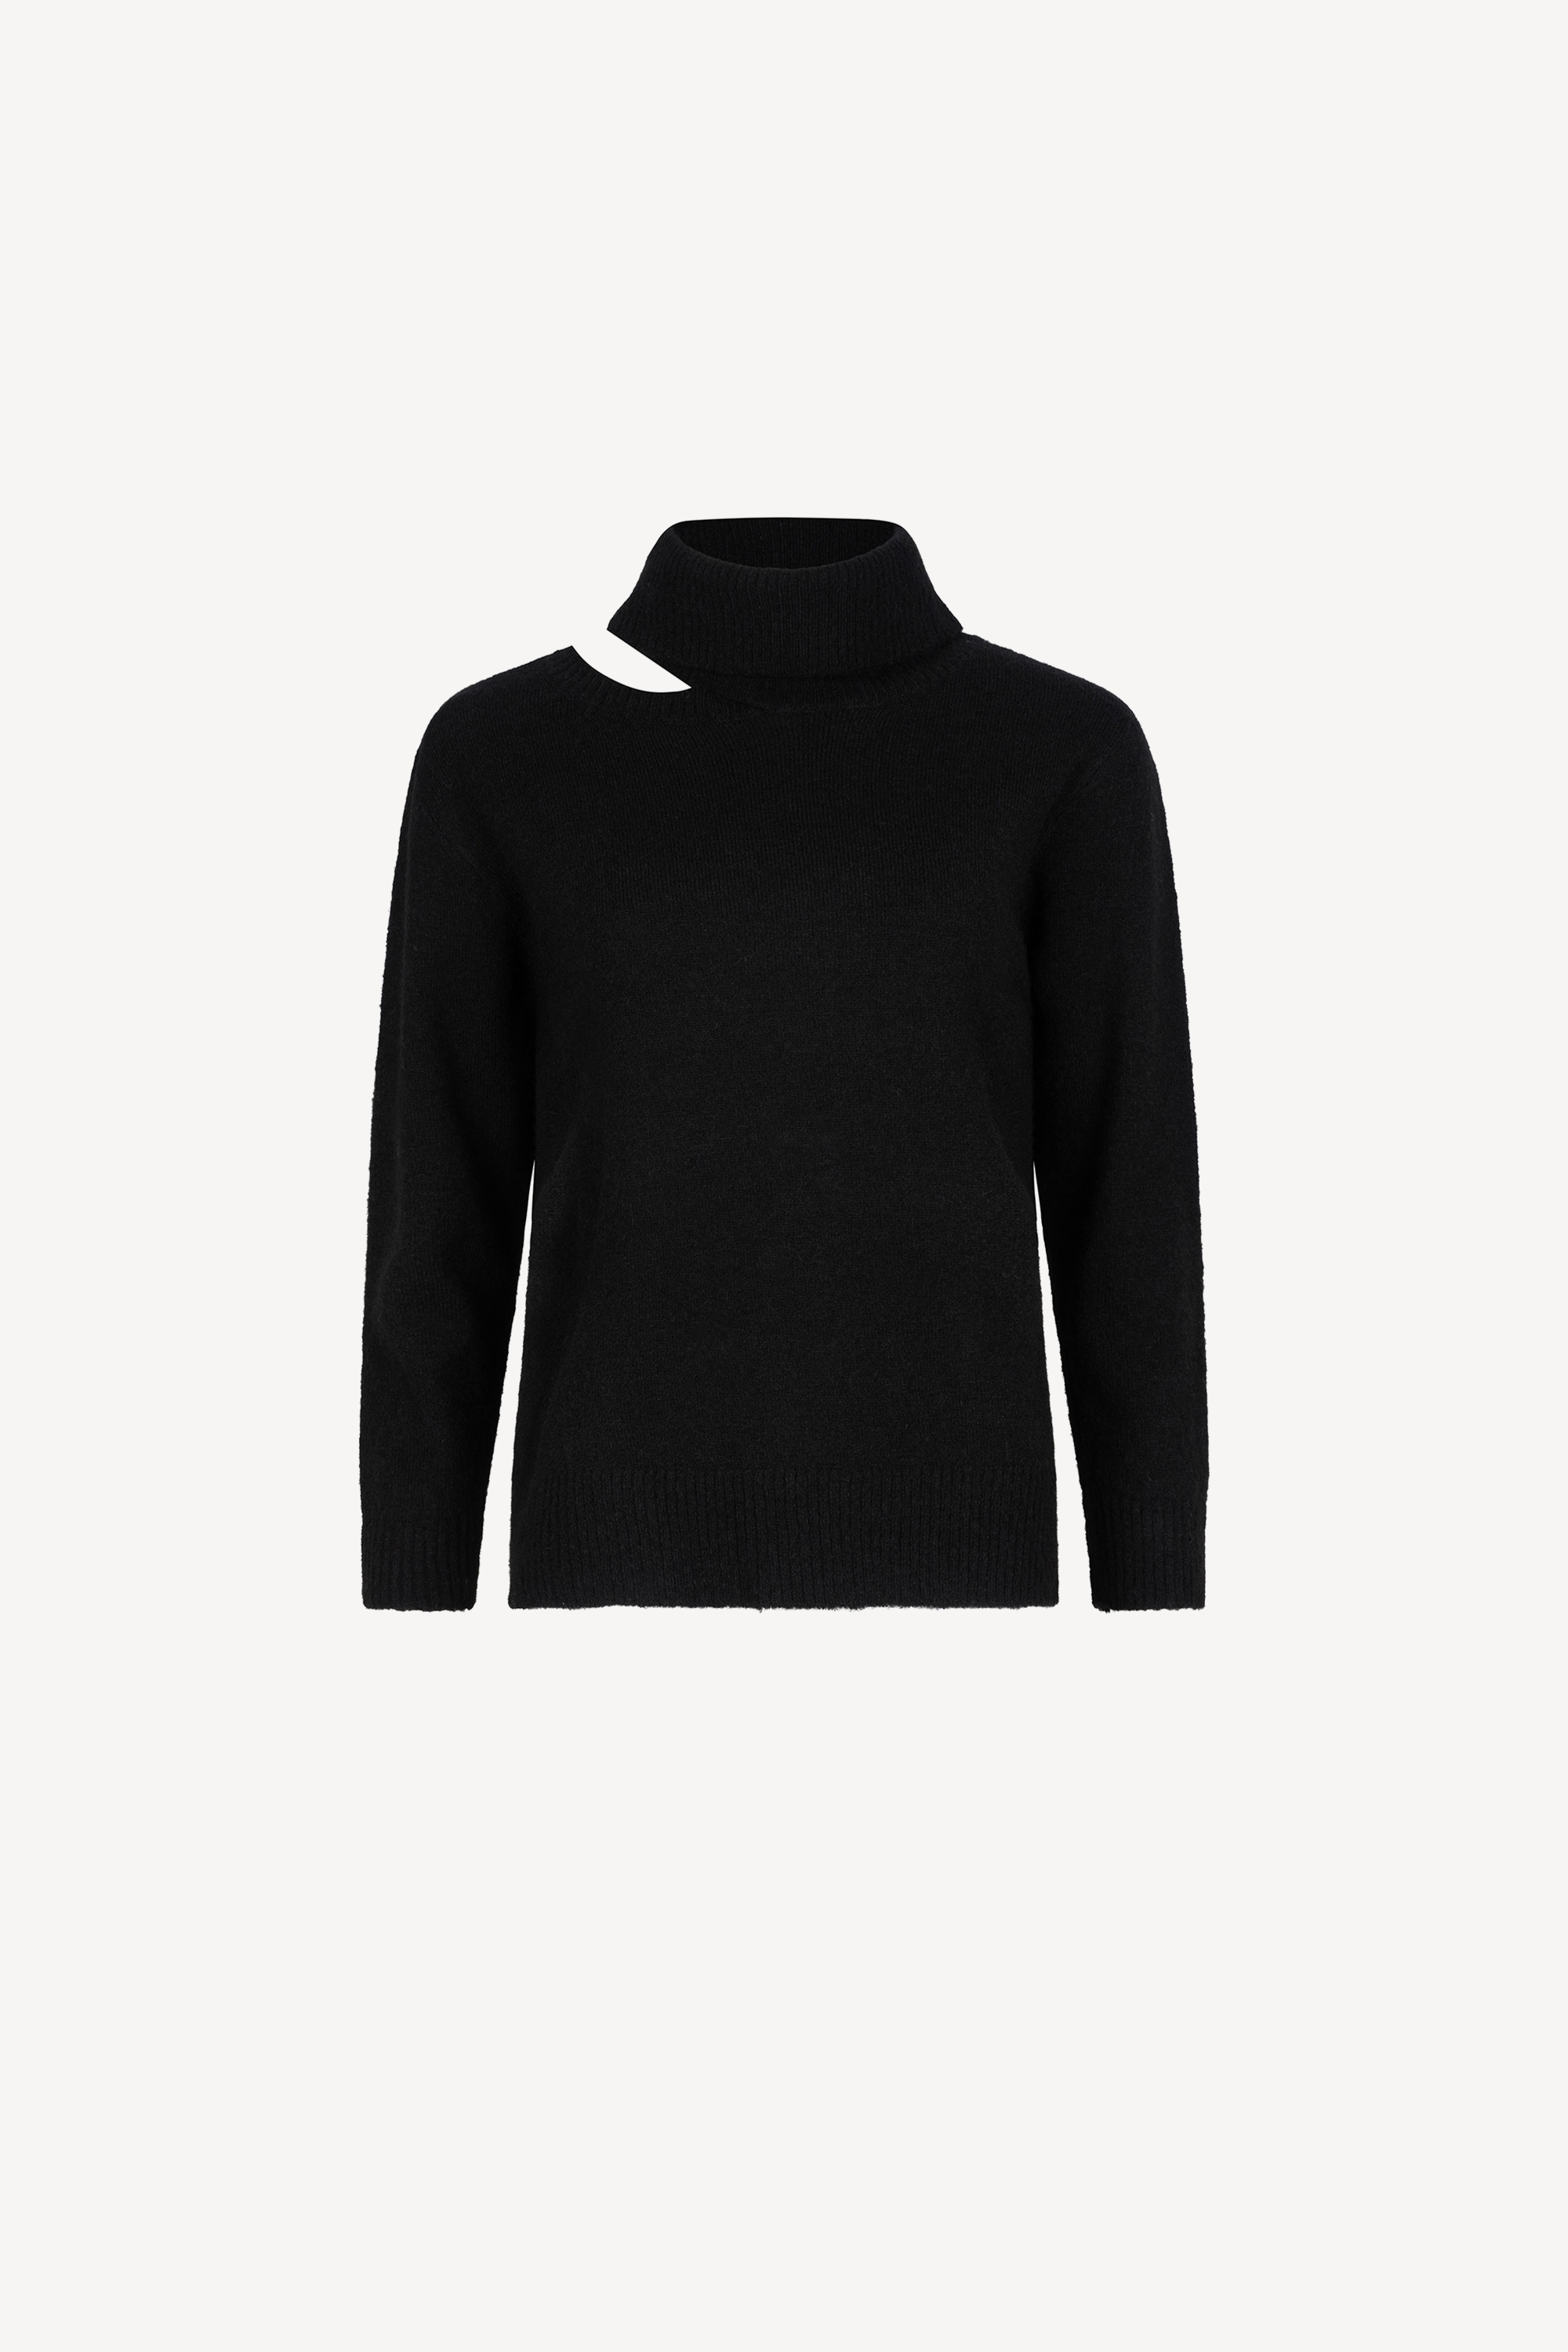 Aubrey Knitted Sweater Black